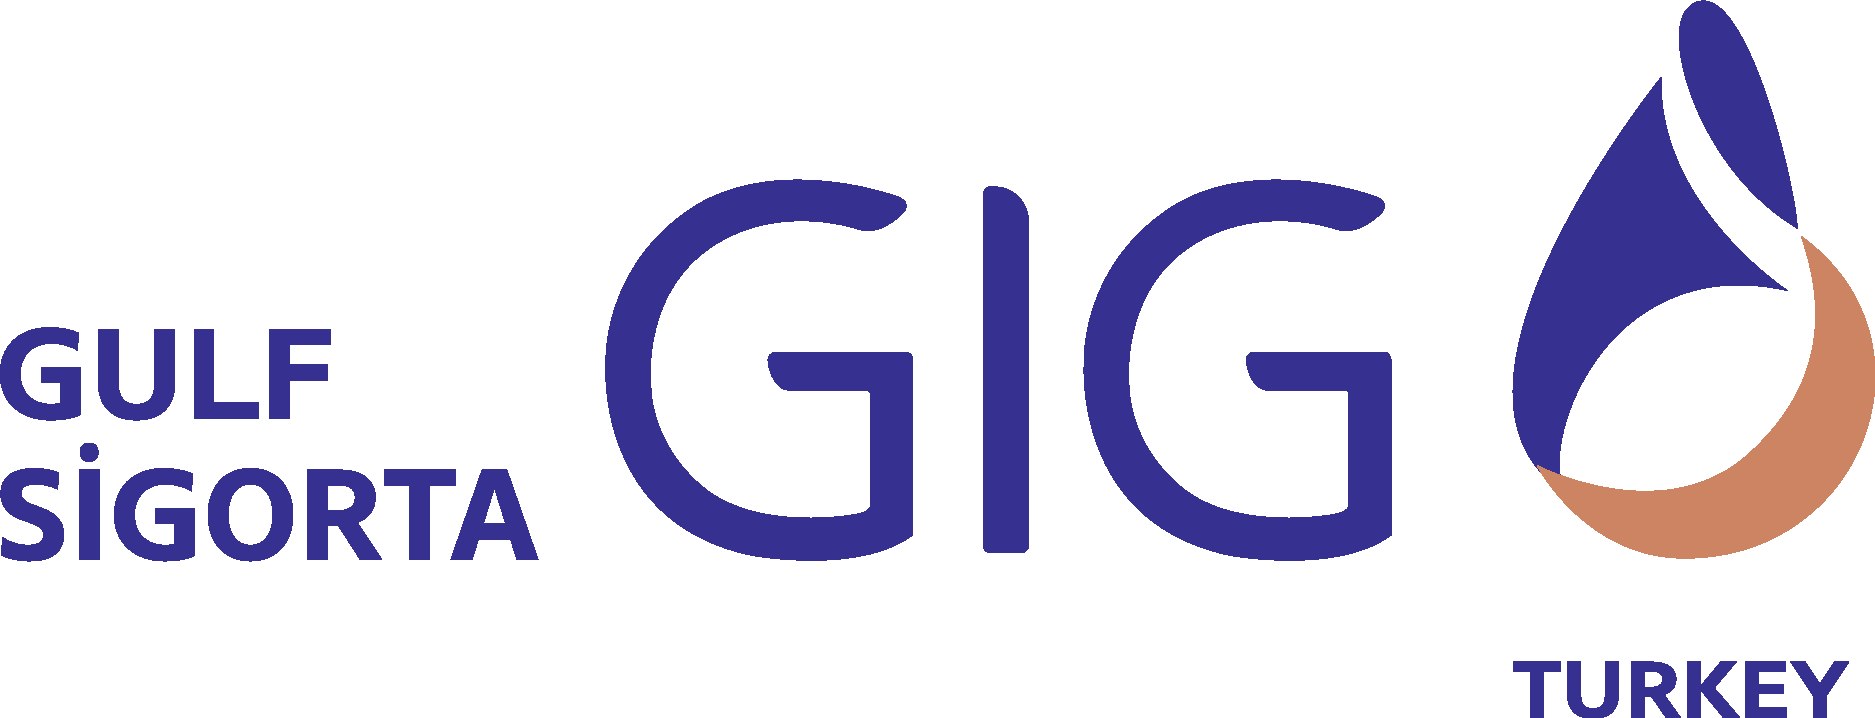 Gulf Sigorta Logo Vector